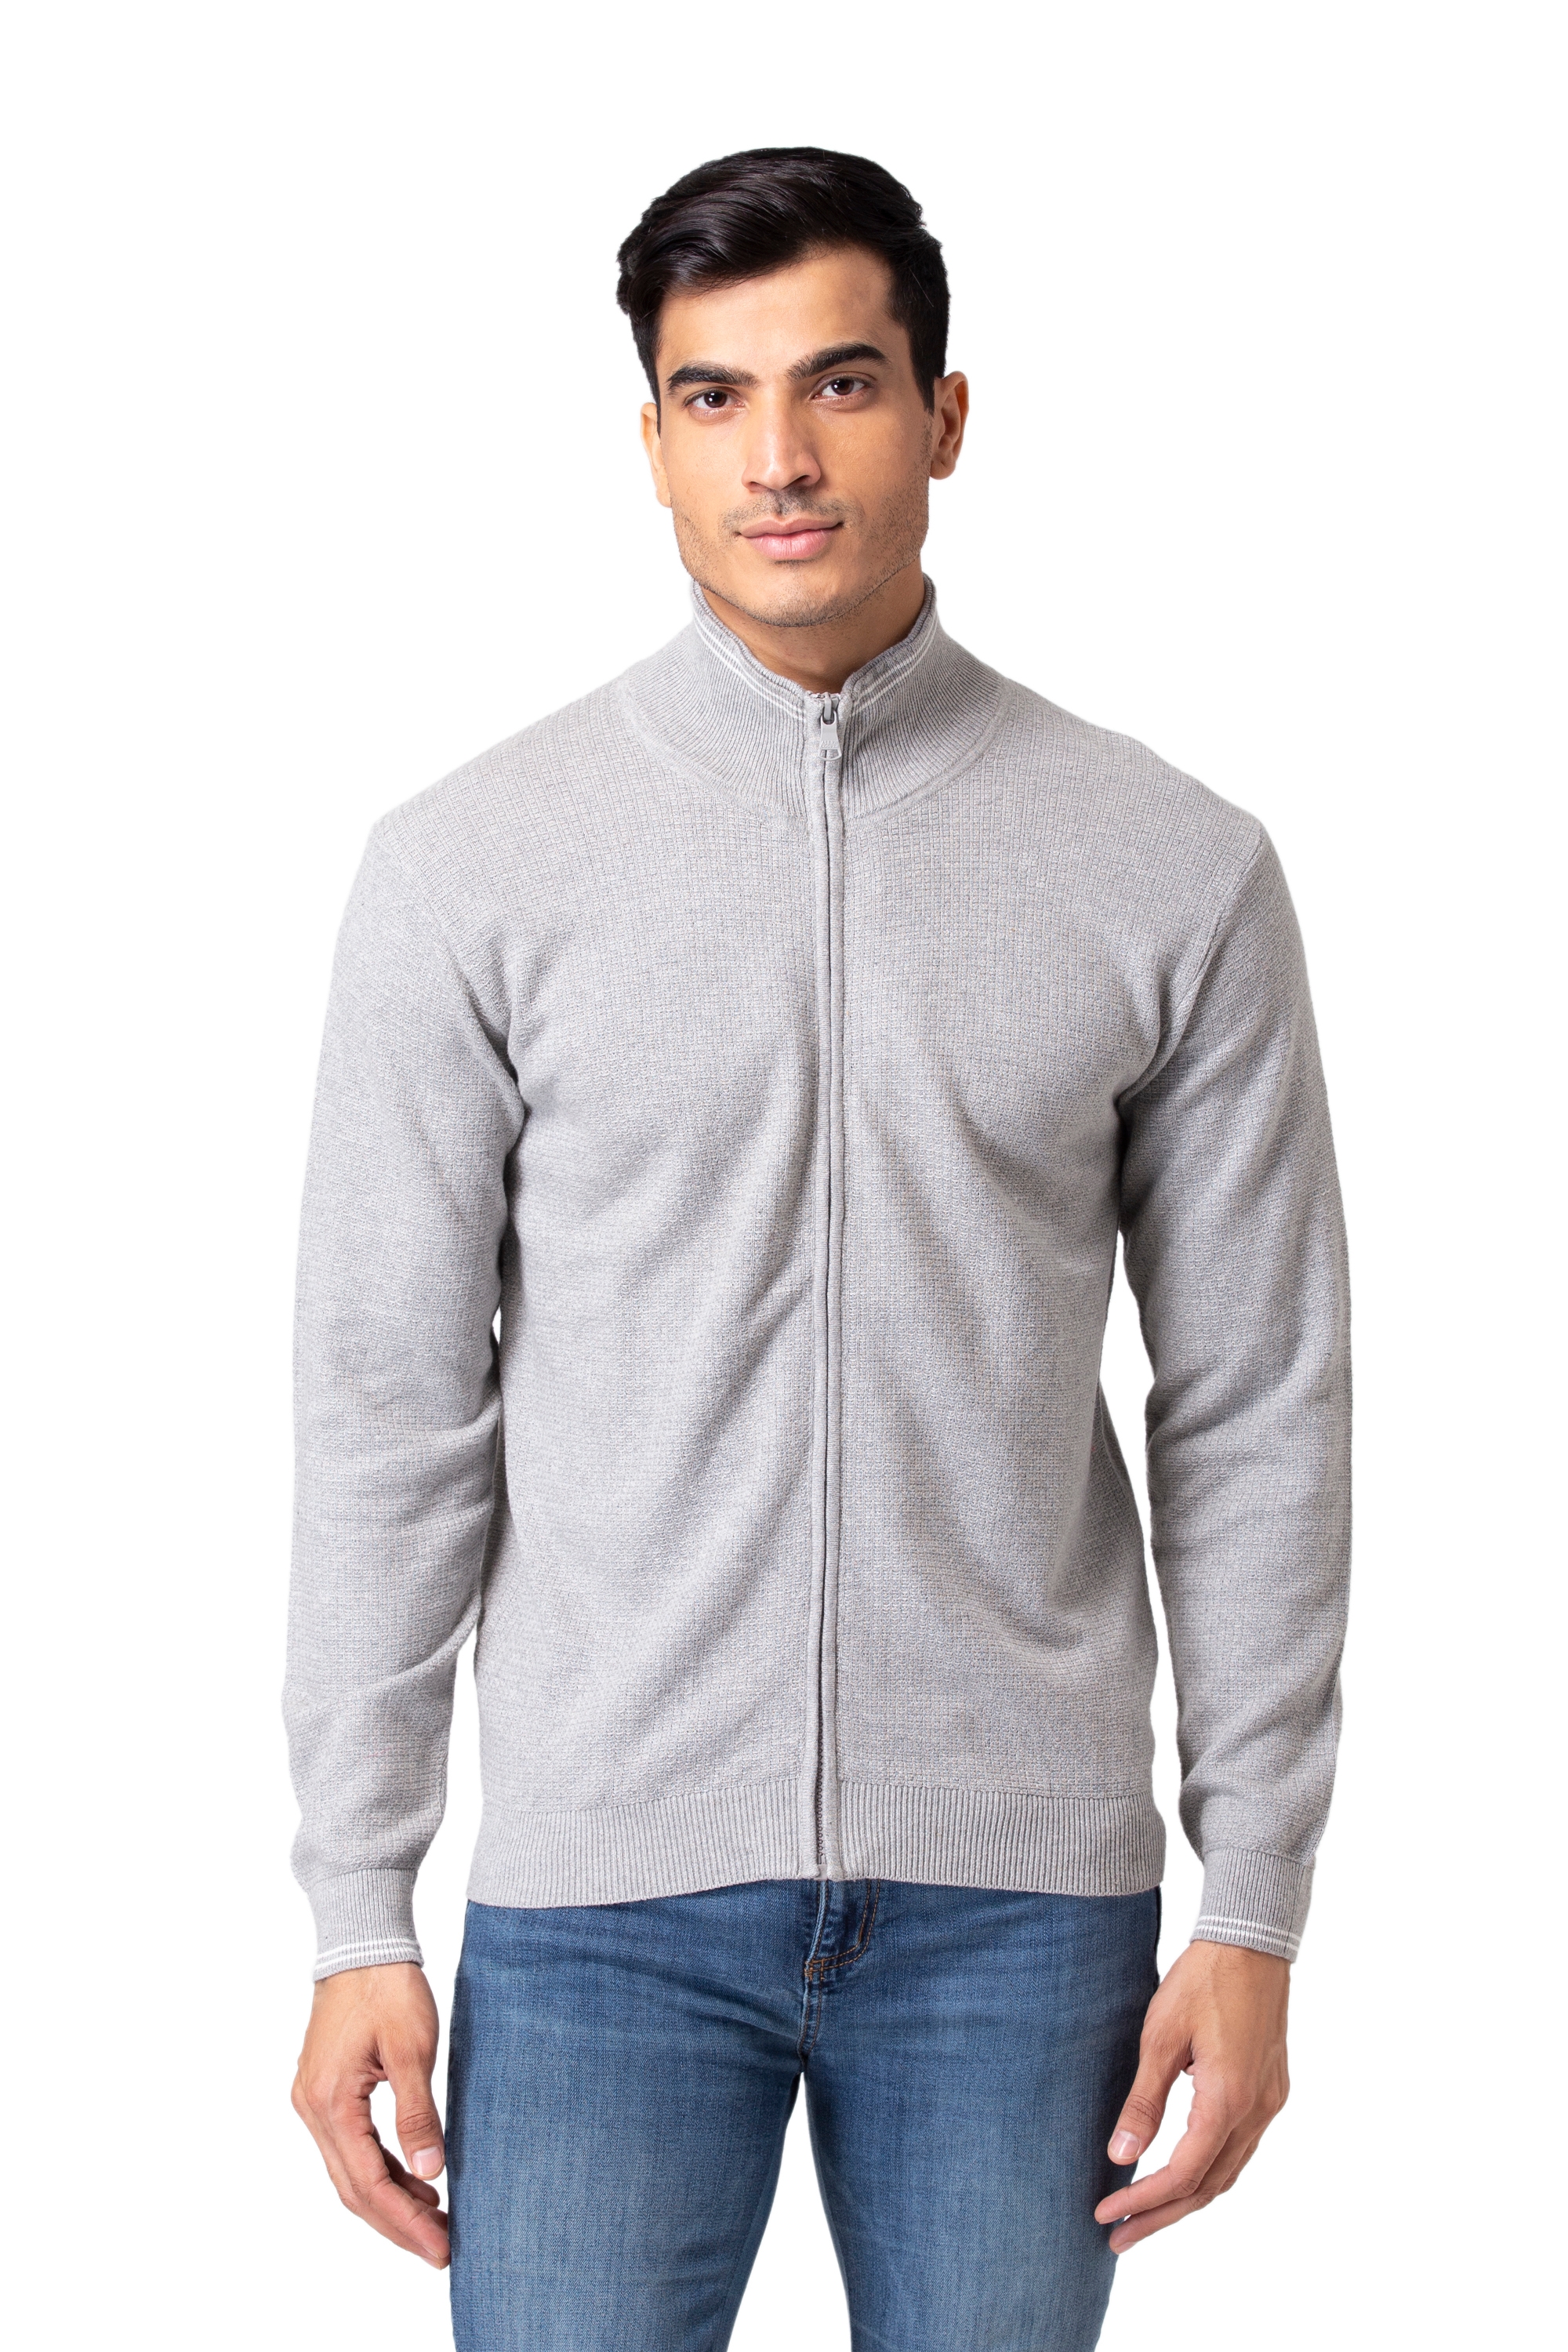 Allen Cooper | Allen Cooper Grey Solid Round Neck Zipper Sweater